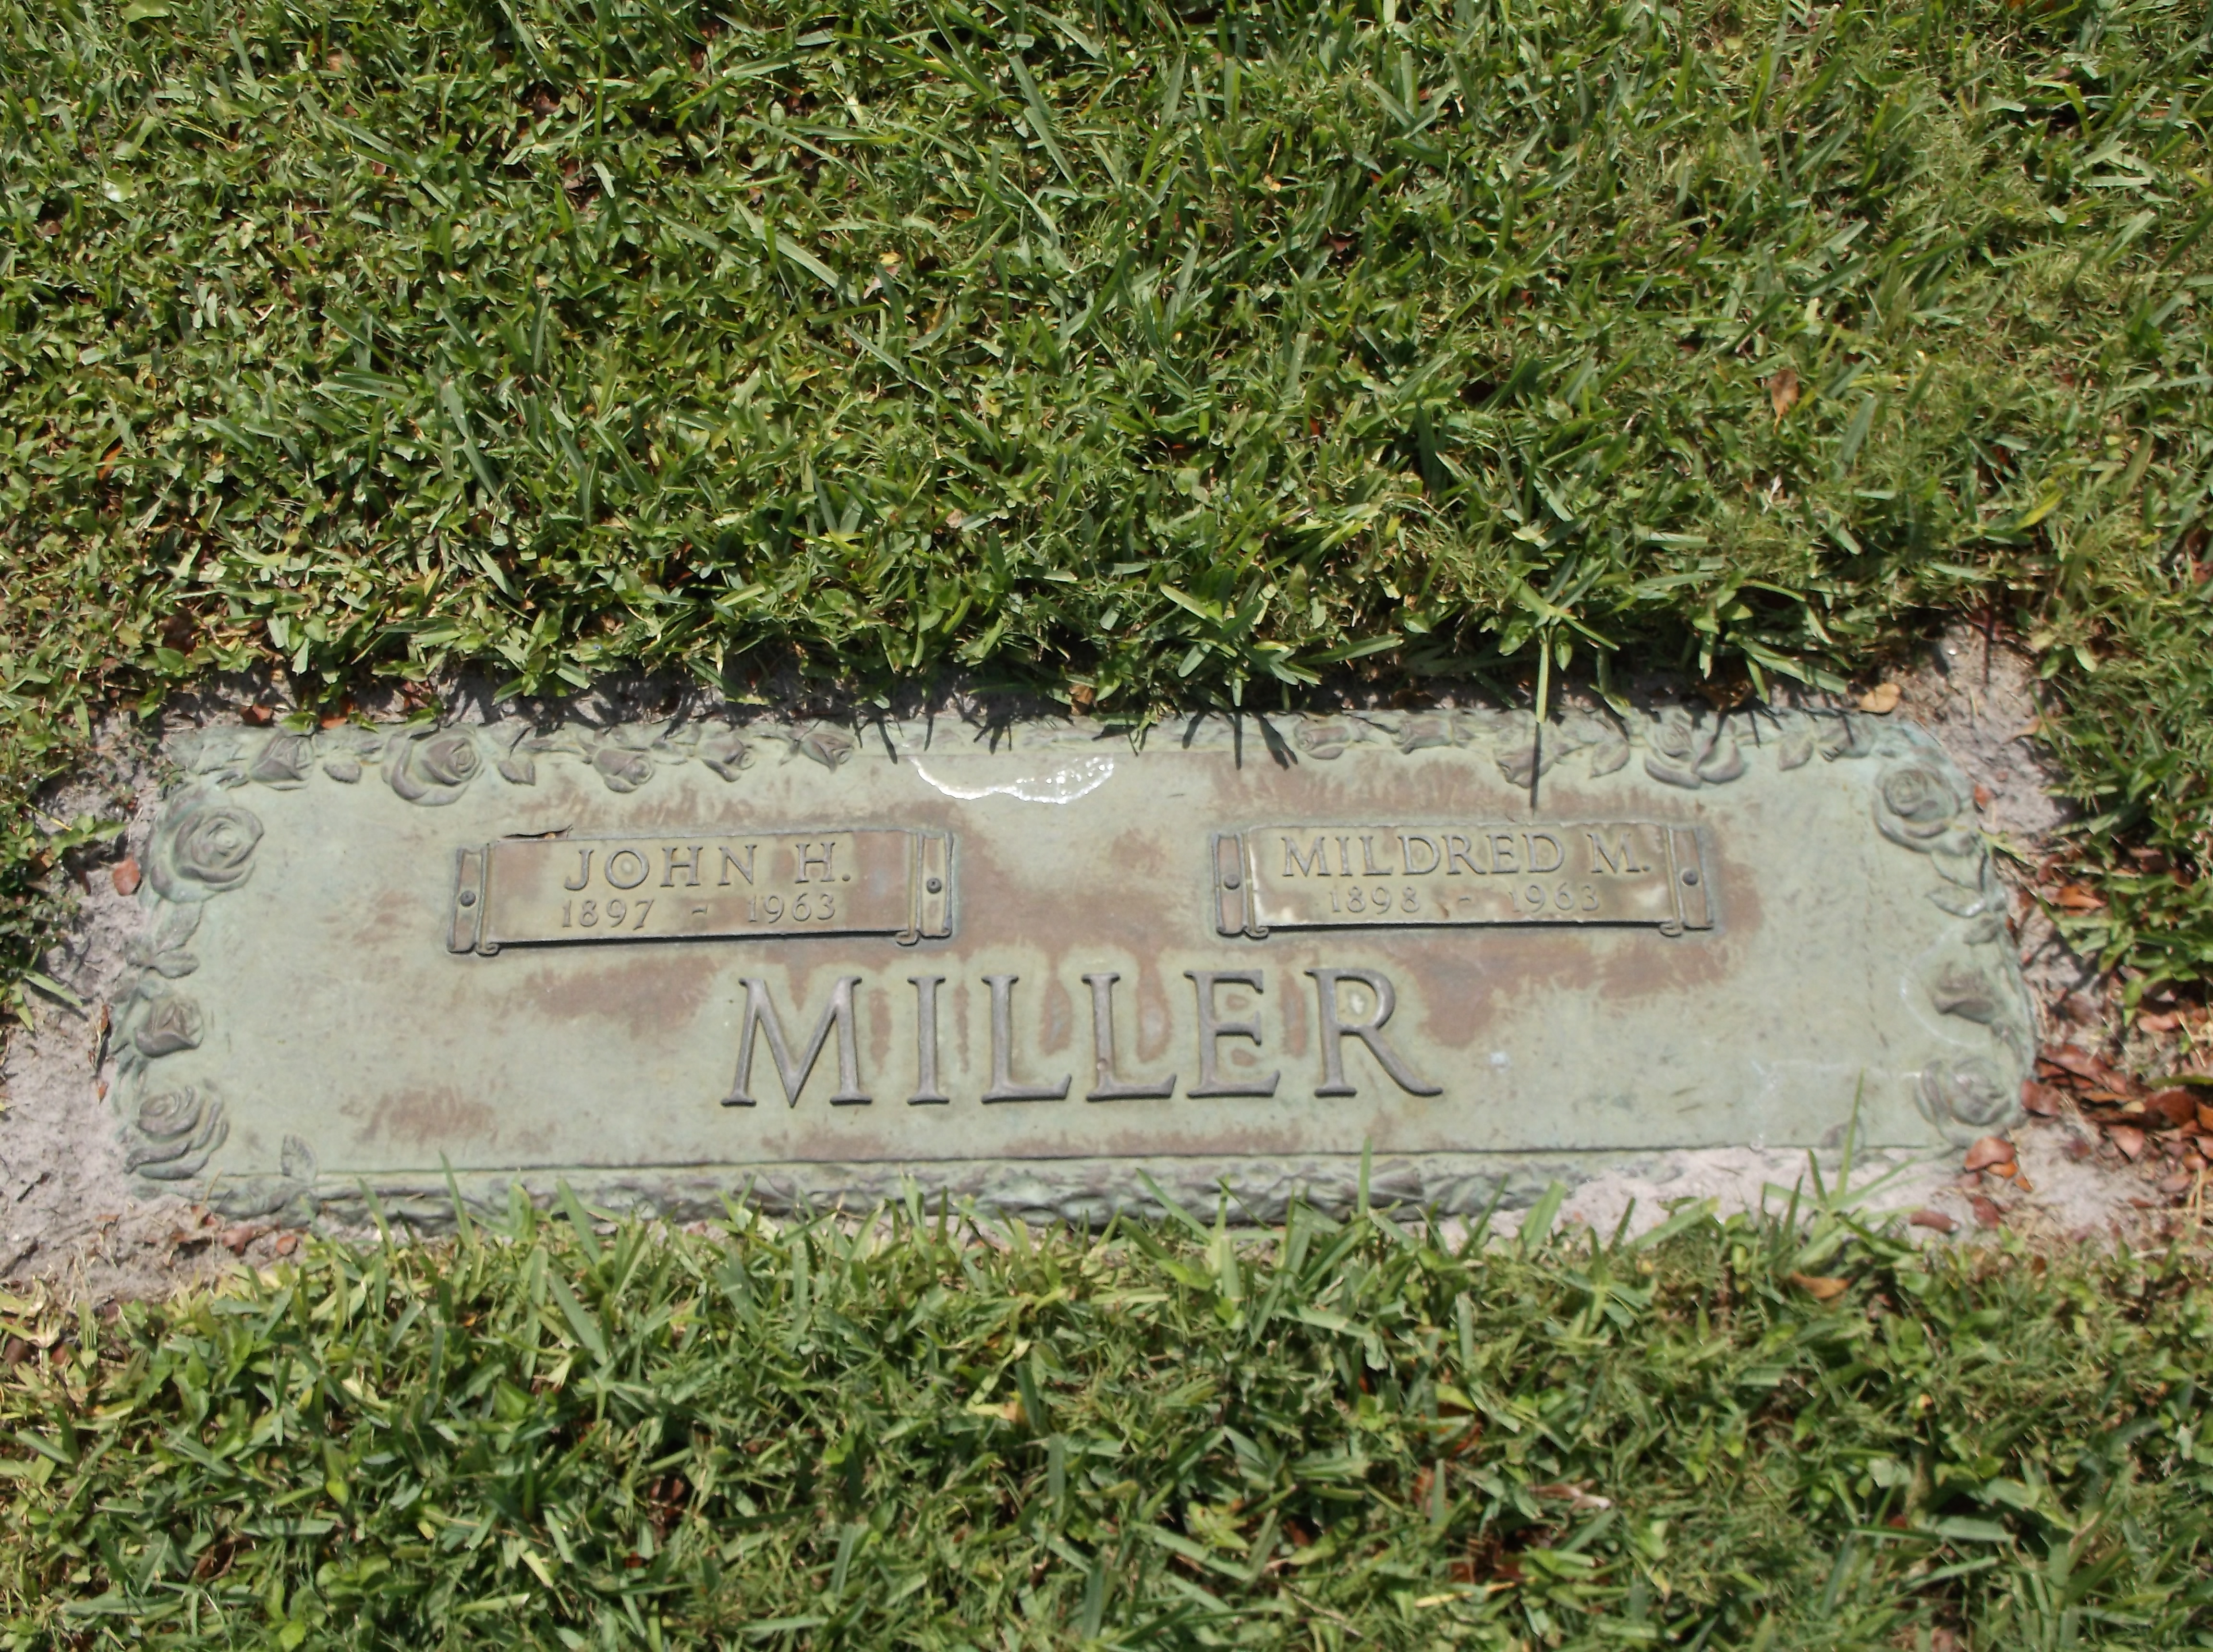 Mildred M Miller